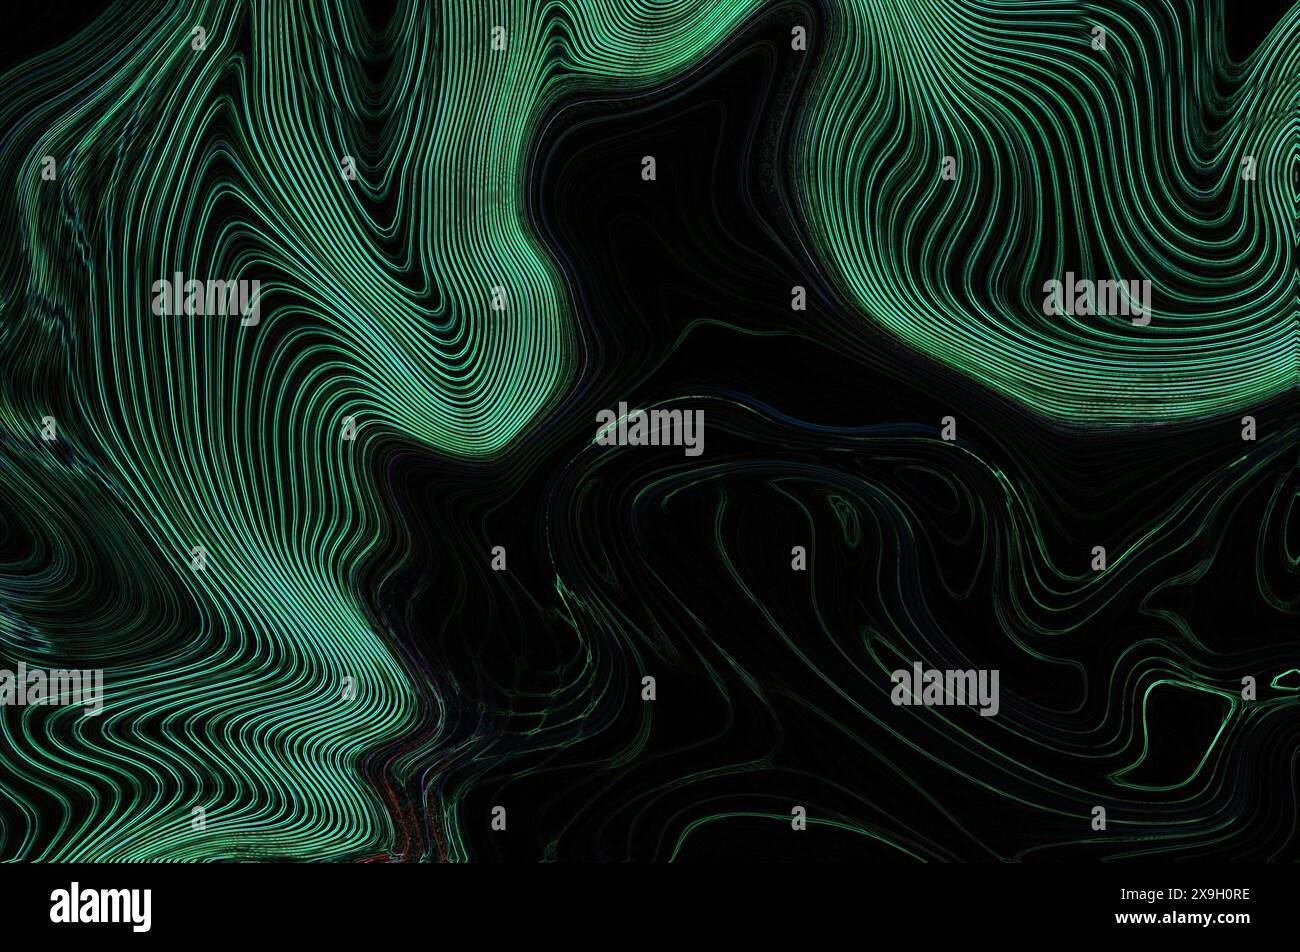 Abstrakte digitale Kunst mit Wellen aus grünen und schwarzen Wirbeln, die eine geheimnisvolle und fließende Atmosphäre schaffen Stockfoto